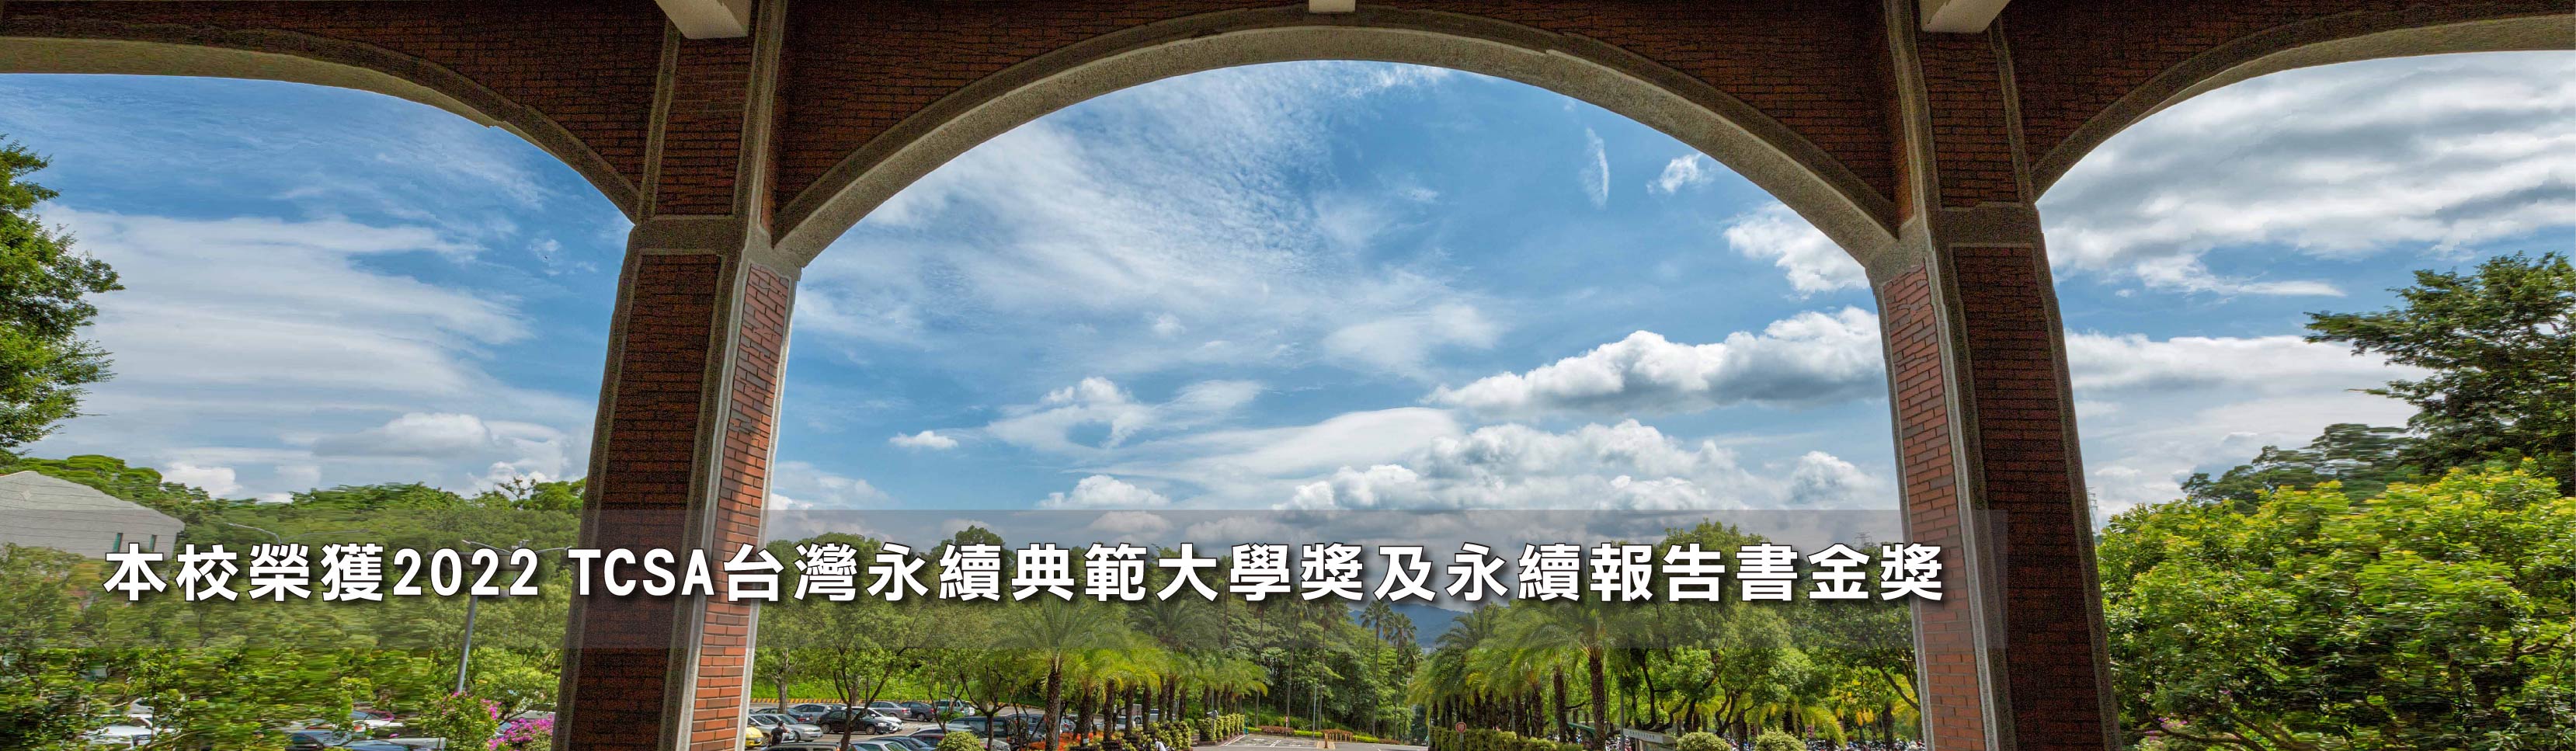 本校榮獲2022 TCSA台灣永續典範大學獎及永續報告書金獎